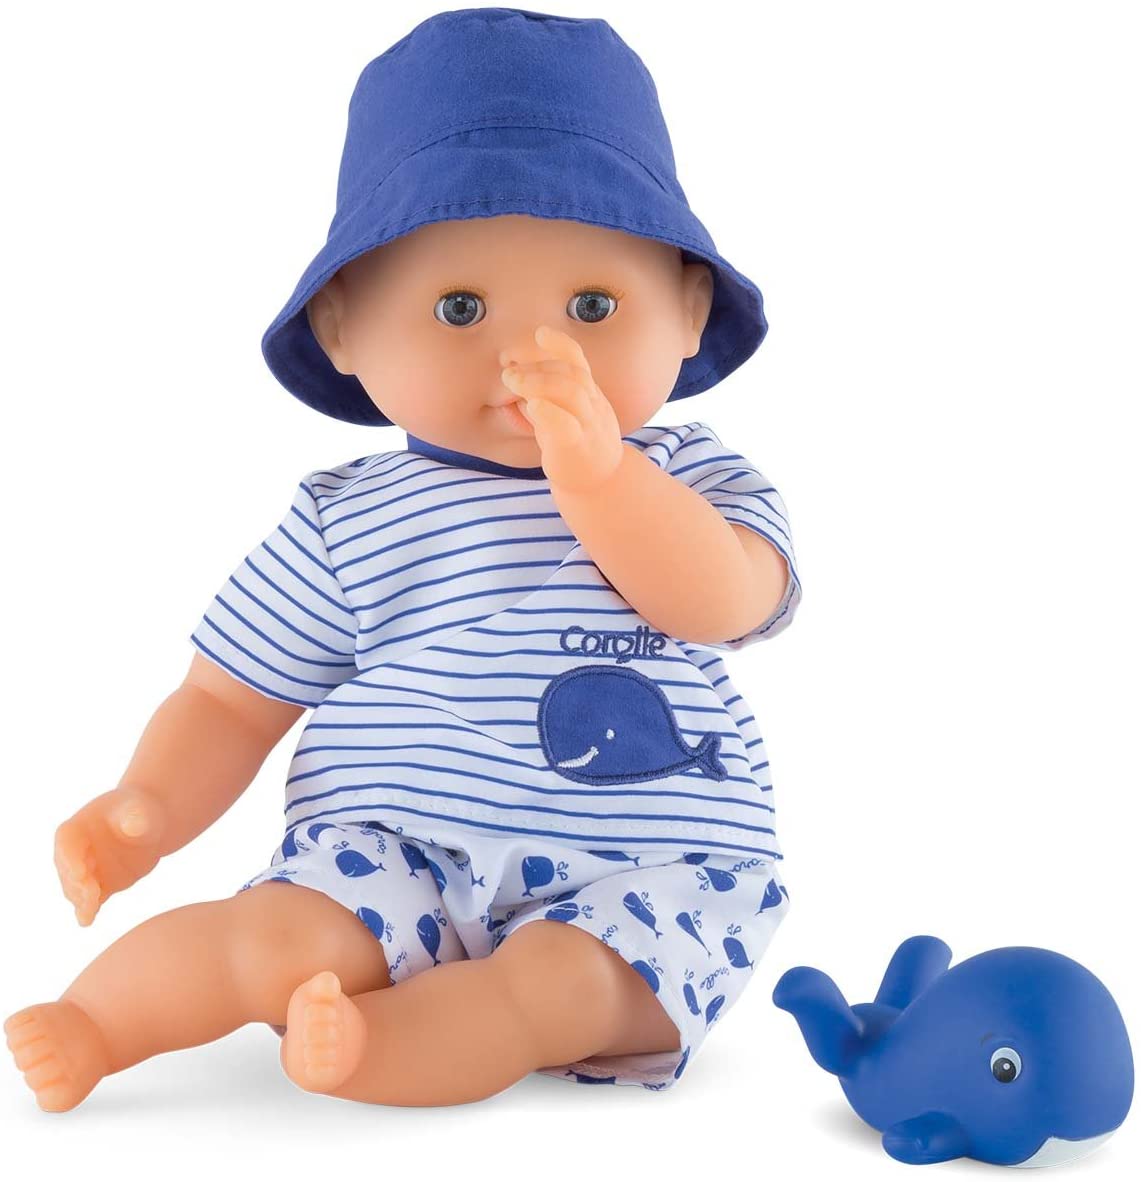 Corolle Mon Premier Poupon Bebe Bath Boy Toy Baby Doll, Blue, 12 inches